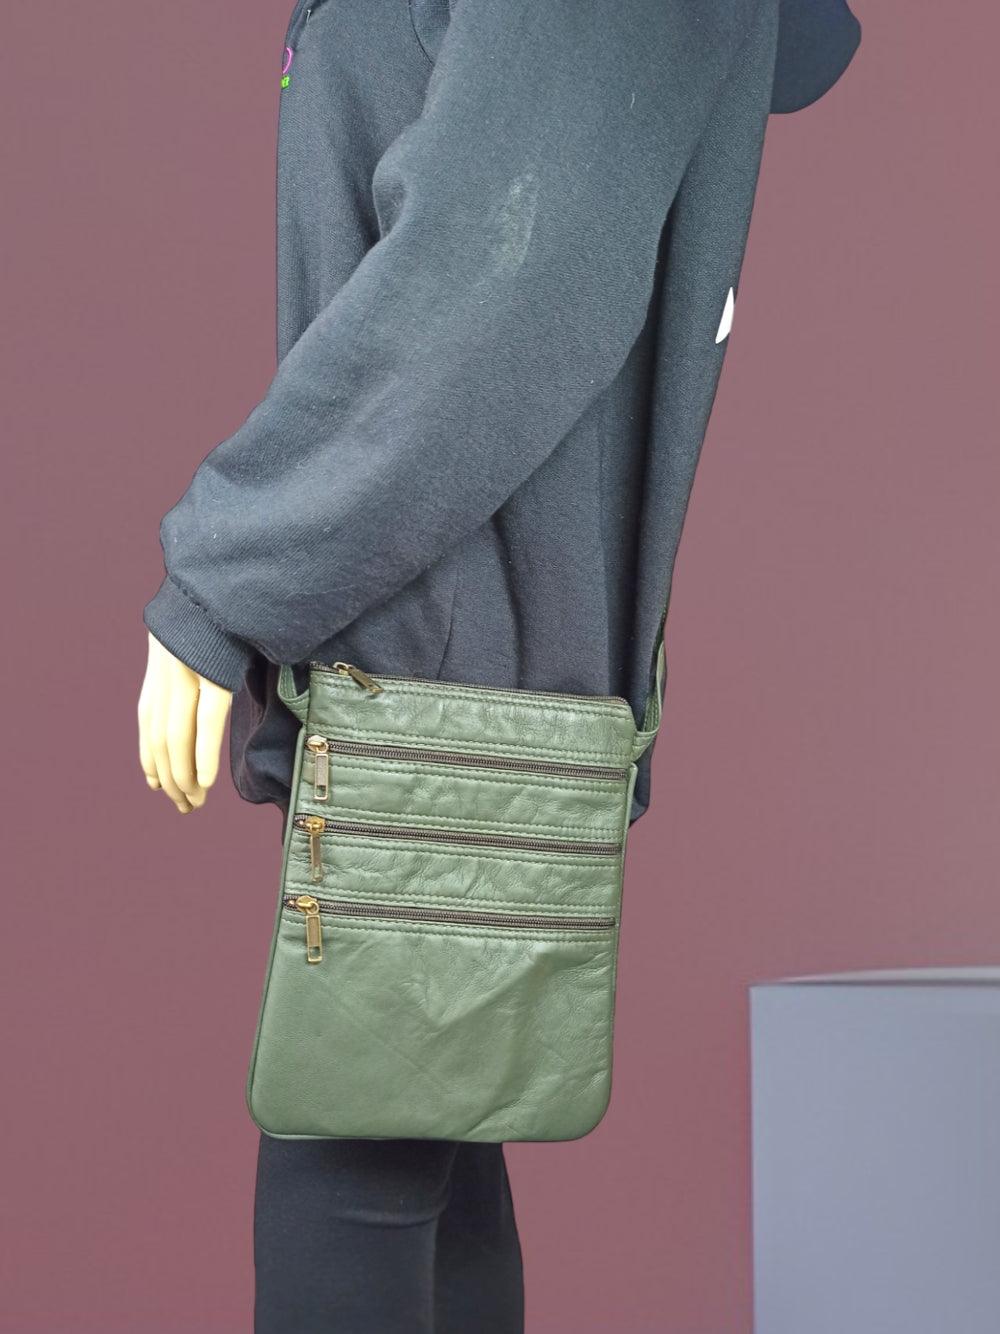 Plain Leather Sling Bag | Plain 5 Zipper | Sling Bag For Girls